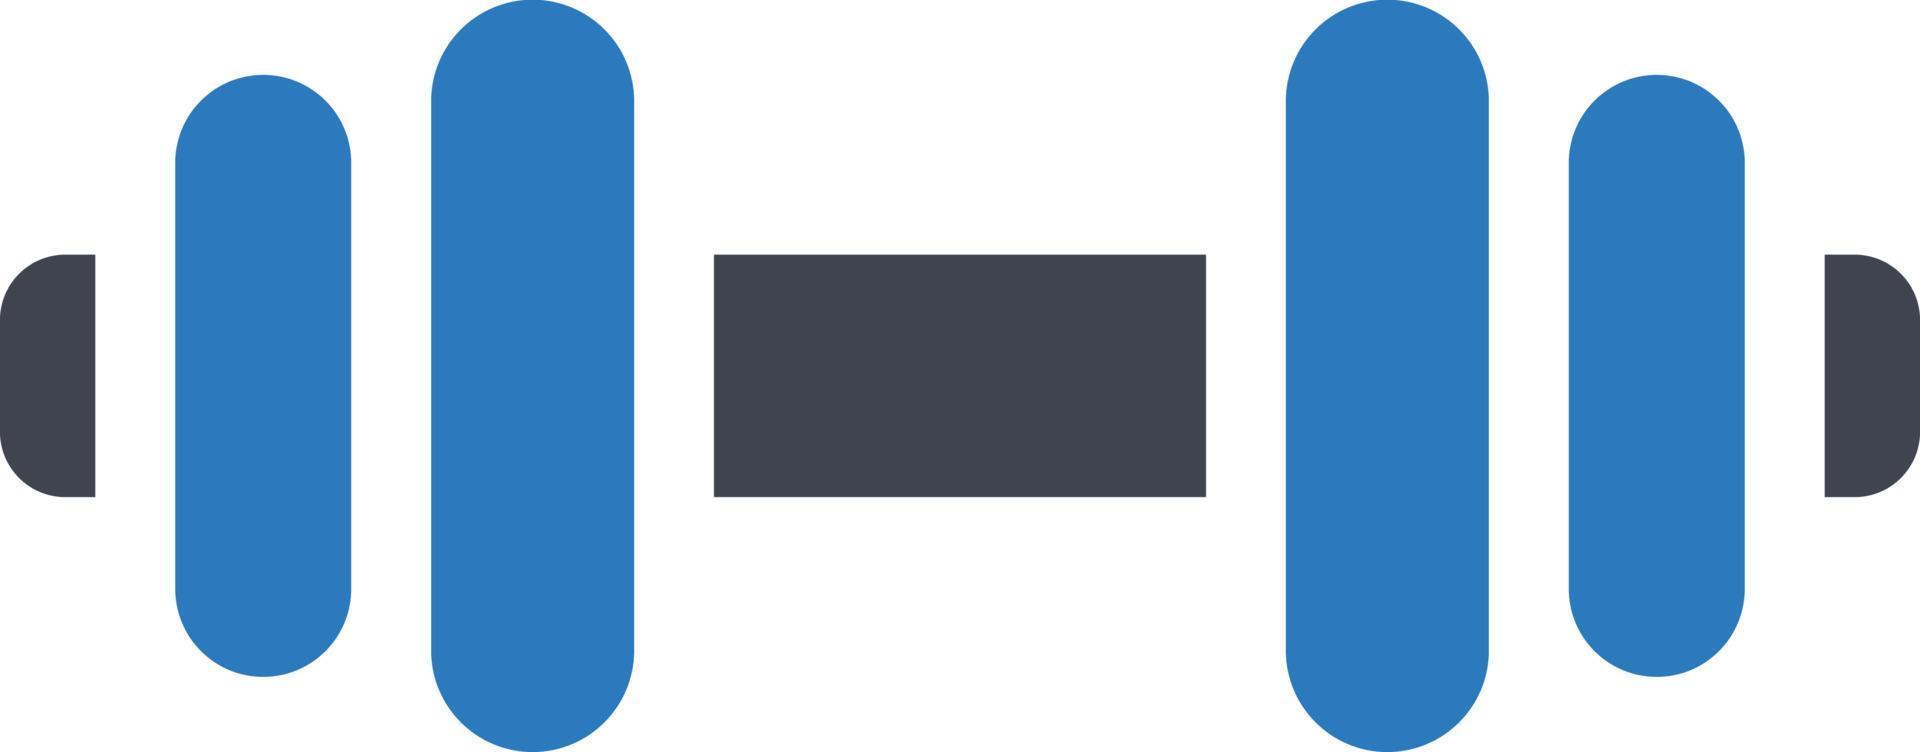 illustrazione vettoriale con manubri su uno sfondo. simboli di qualità premium. icone vettoriali per il concetto e la progettazione grafica.